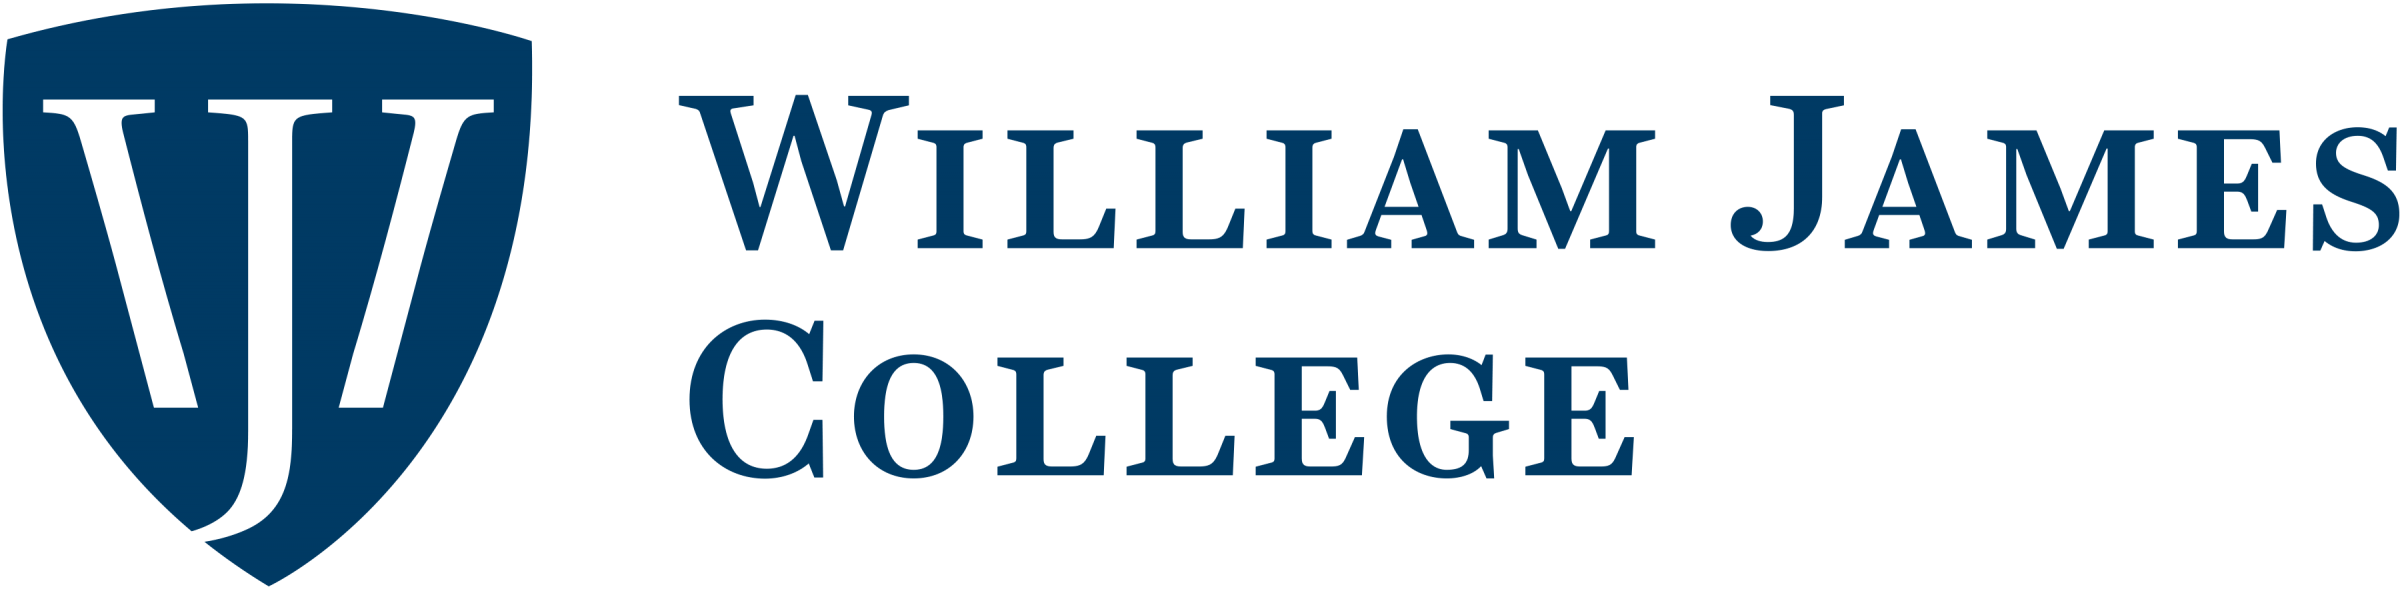 William James College 